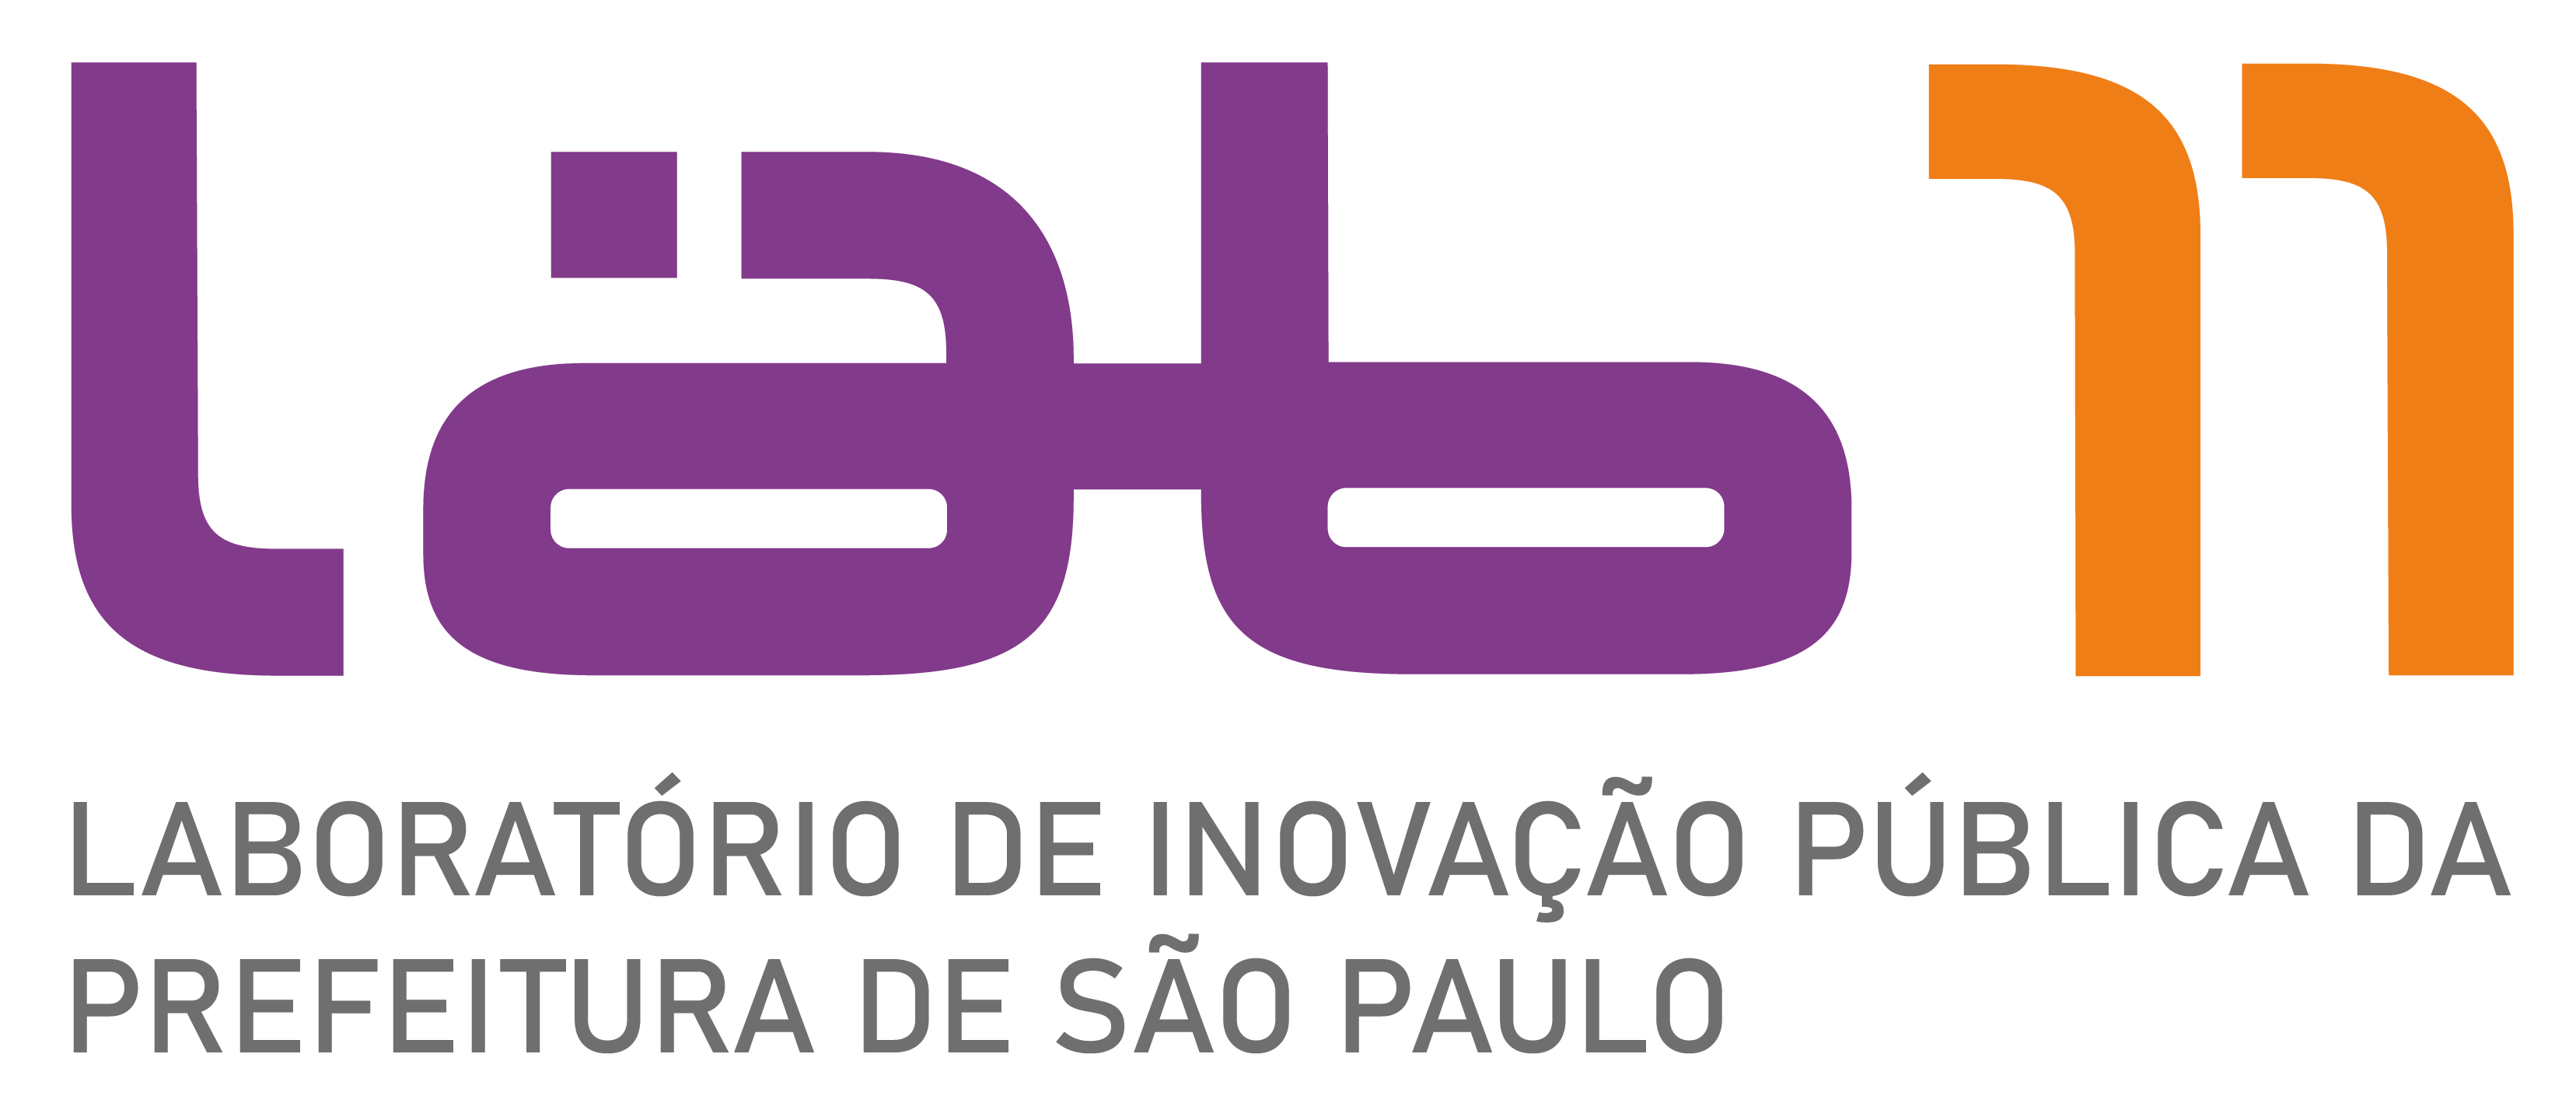 Laboratório de Inovação Pública da Prefeitura de São Paulo